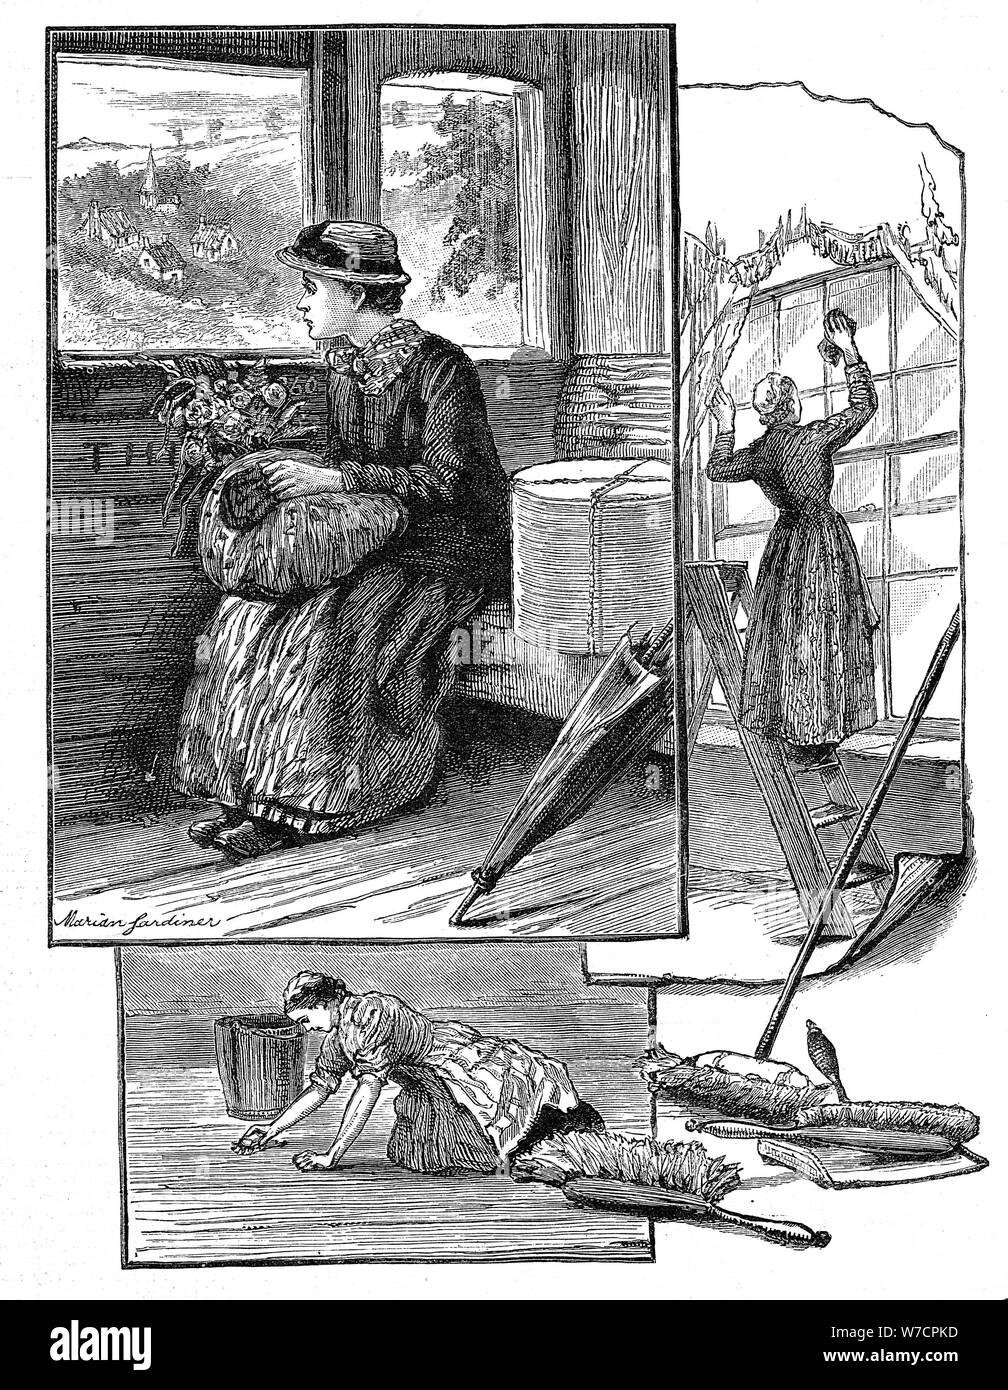 Ragazza sul suo modo di cominciare a lavorare al servizio domestico, 1884. Artista: Marian Gardiner Foto Stock